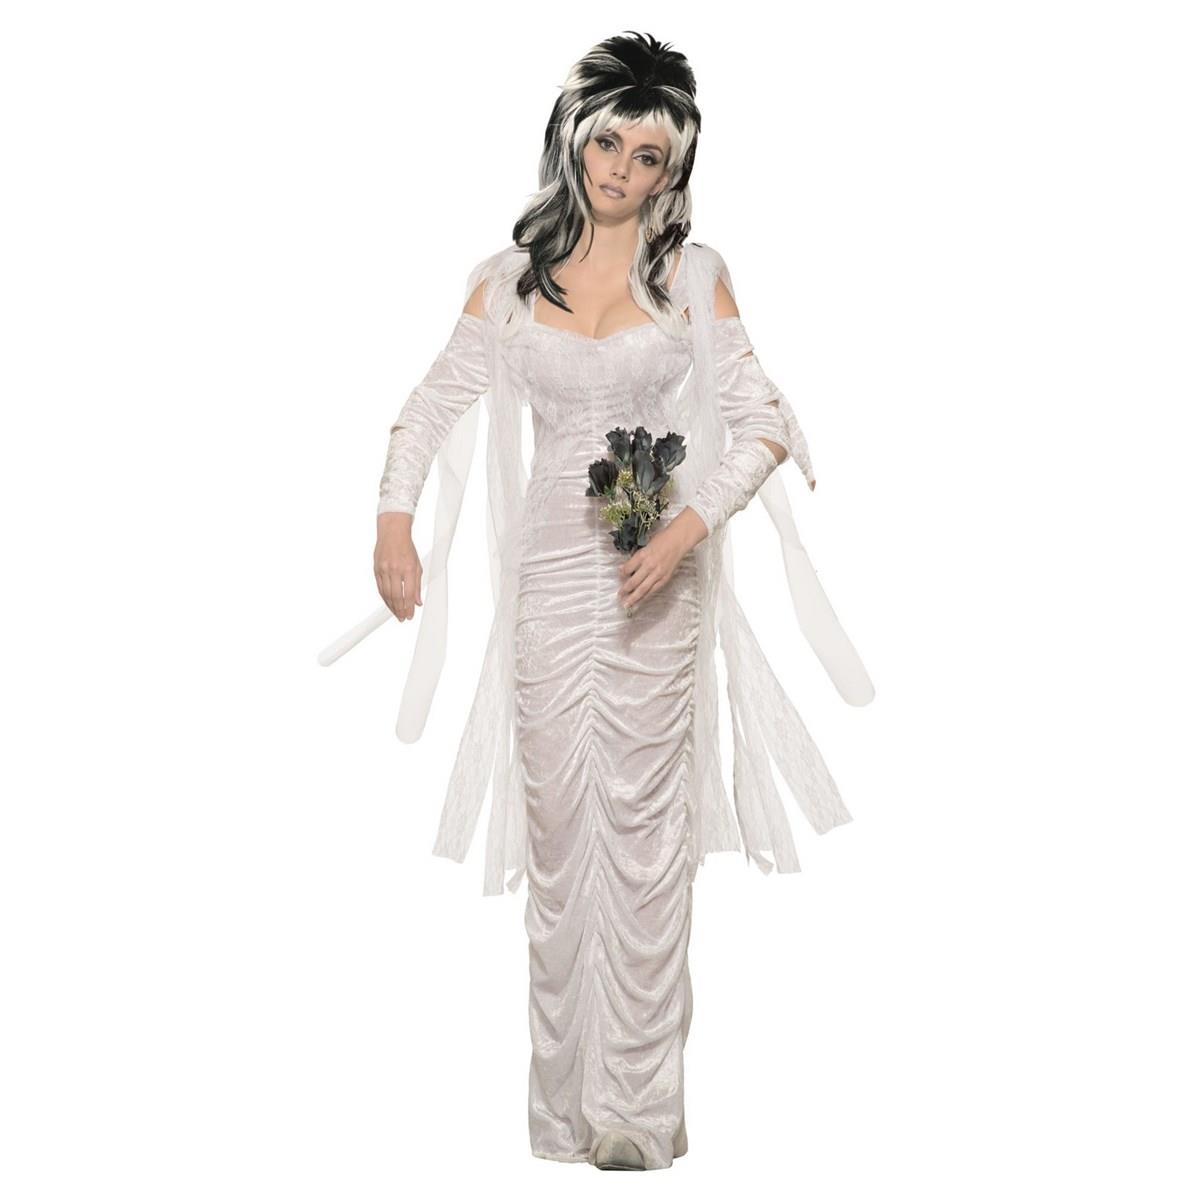 Picture of Forum Novelties 277472 Halloween Womens Haunted Bride Costume - Standard